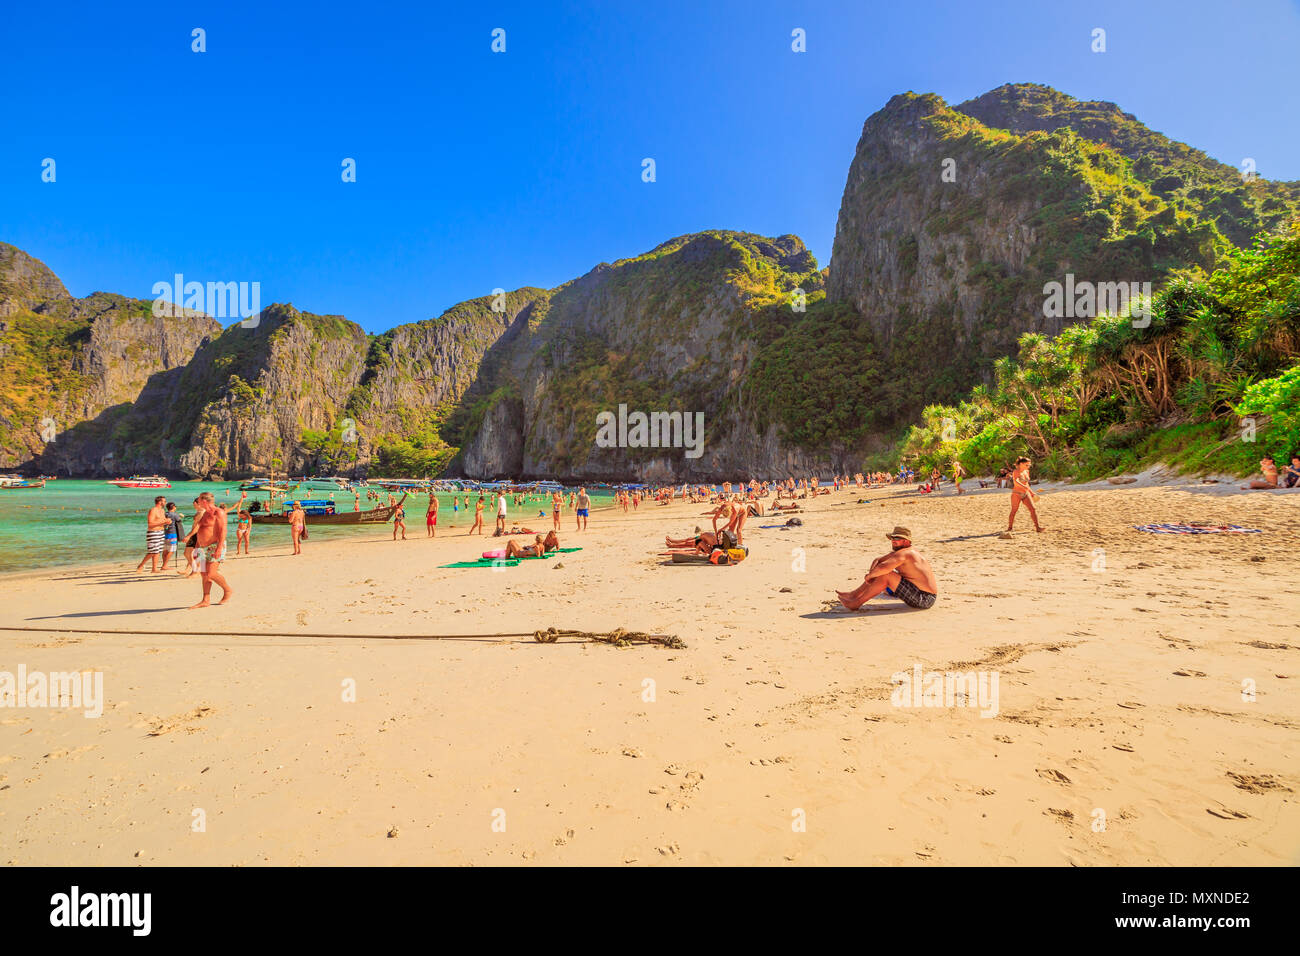 Maya Bay, Phi Phi Leh, Thailand - 31. Dezember 2015: die Menschen beim Sonnenbaden auf beliebte Maya Bay Strand in Ko Phi Phi Leh, Krabi, Andaman Meer. Der legendäre Strand ist von Tausenden von Besuchern jeden Tag besucht. Stockfoto